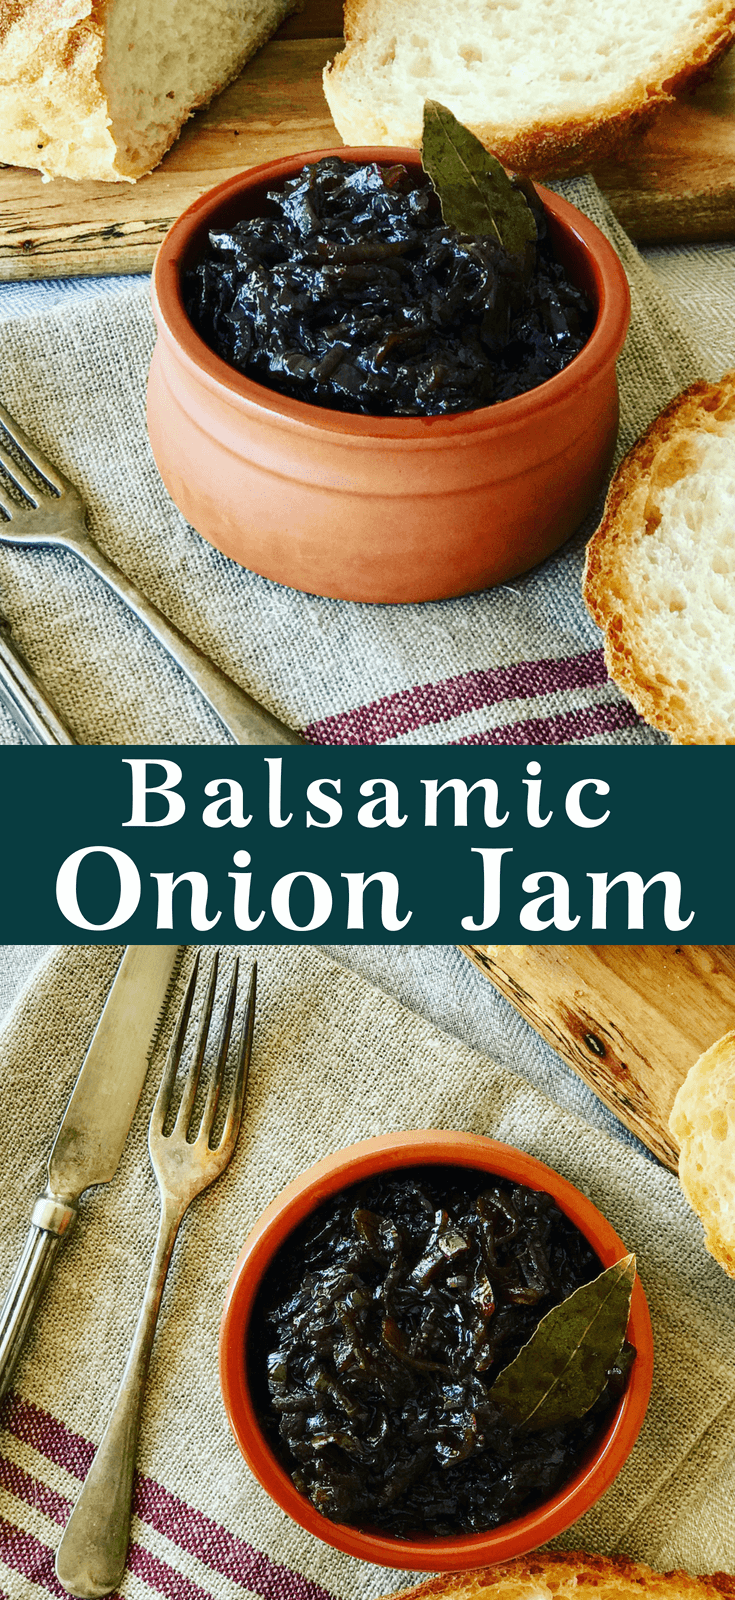 onion jam in a bowl beside bread